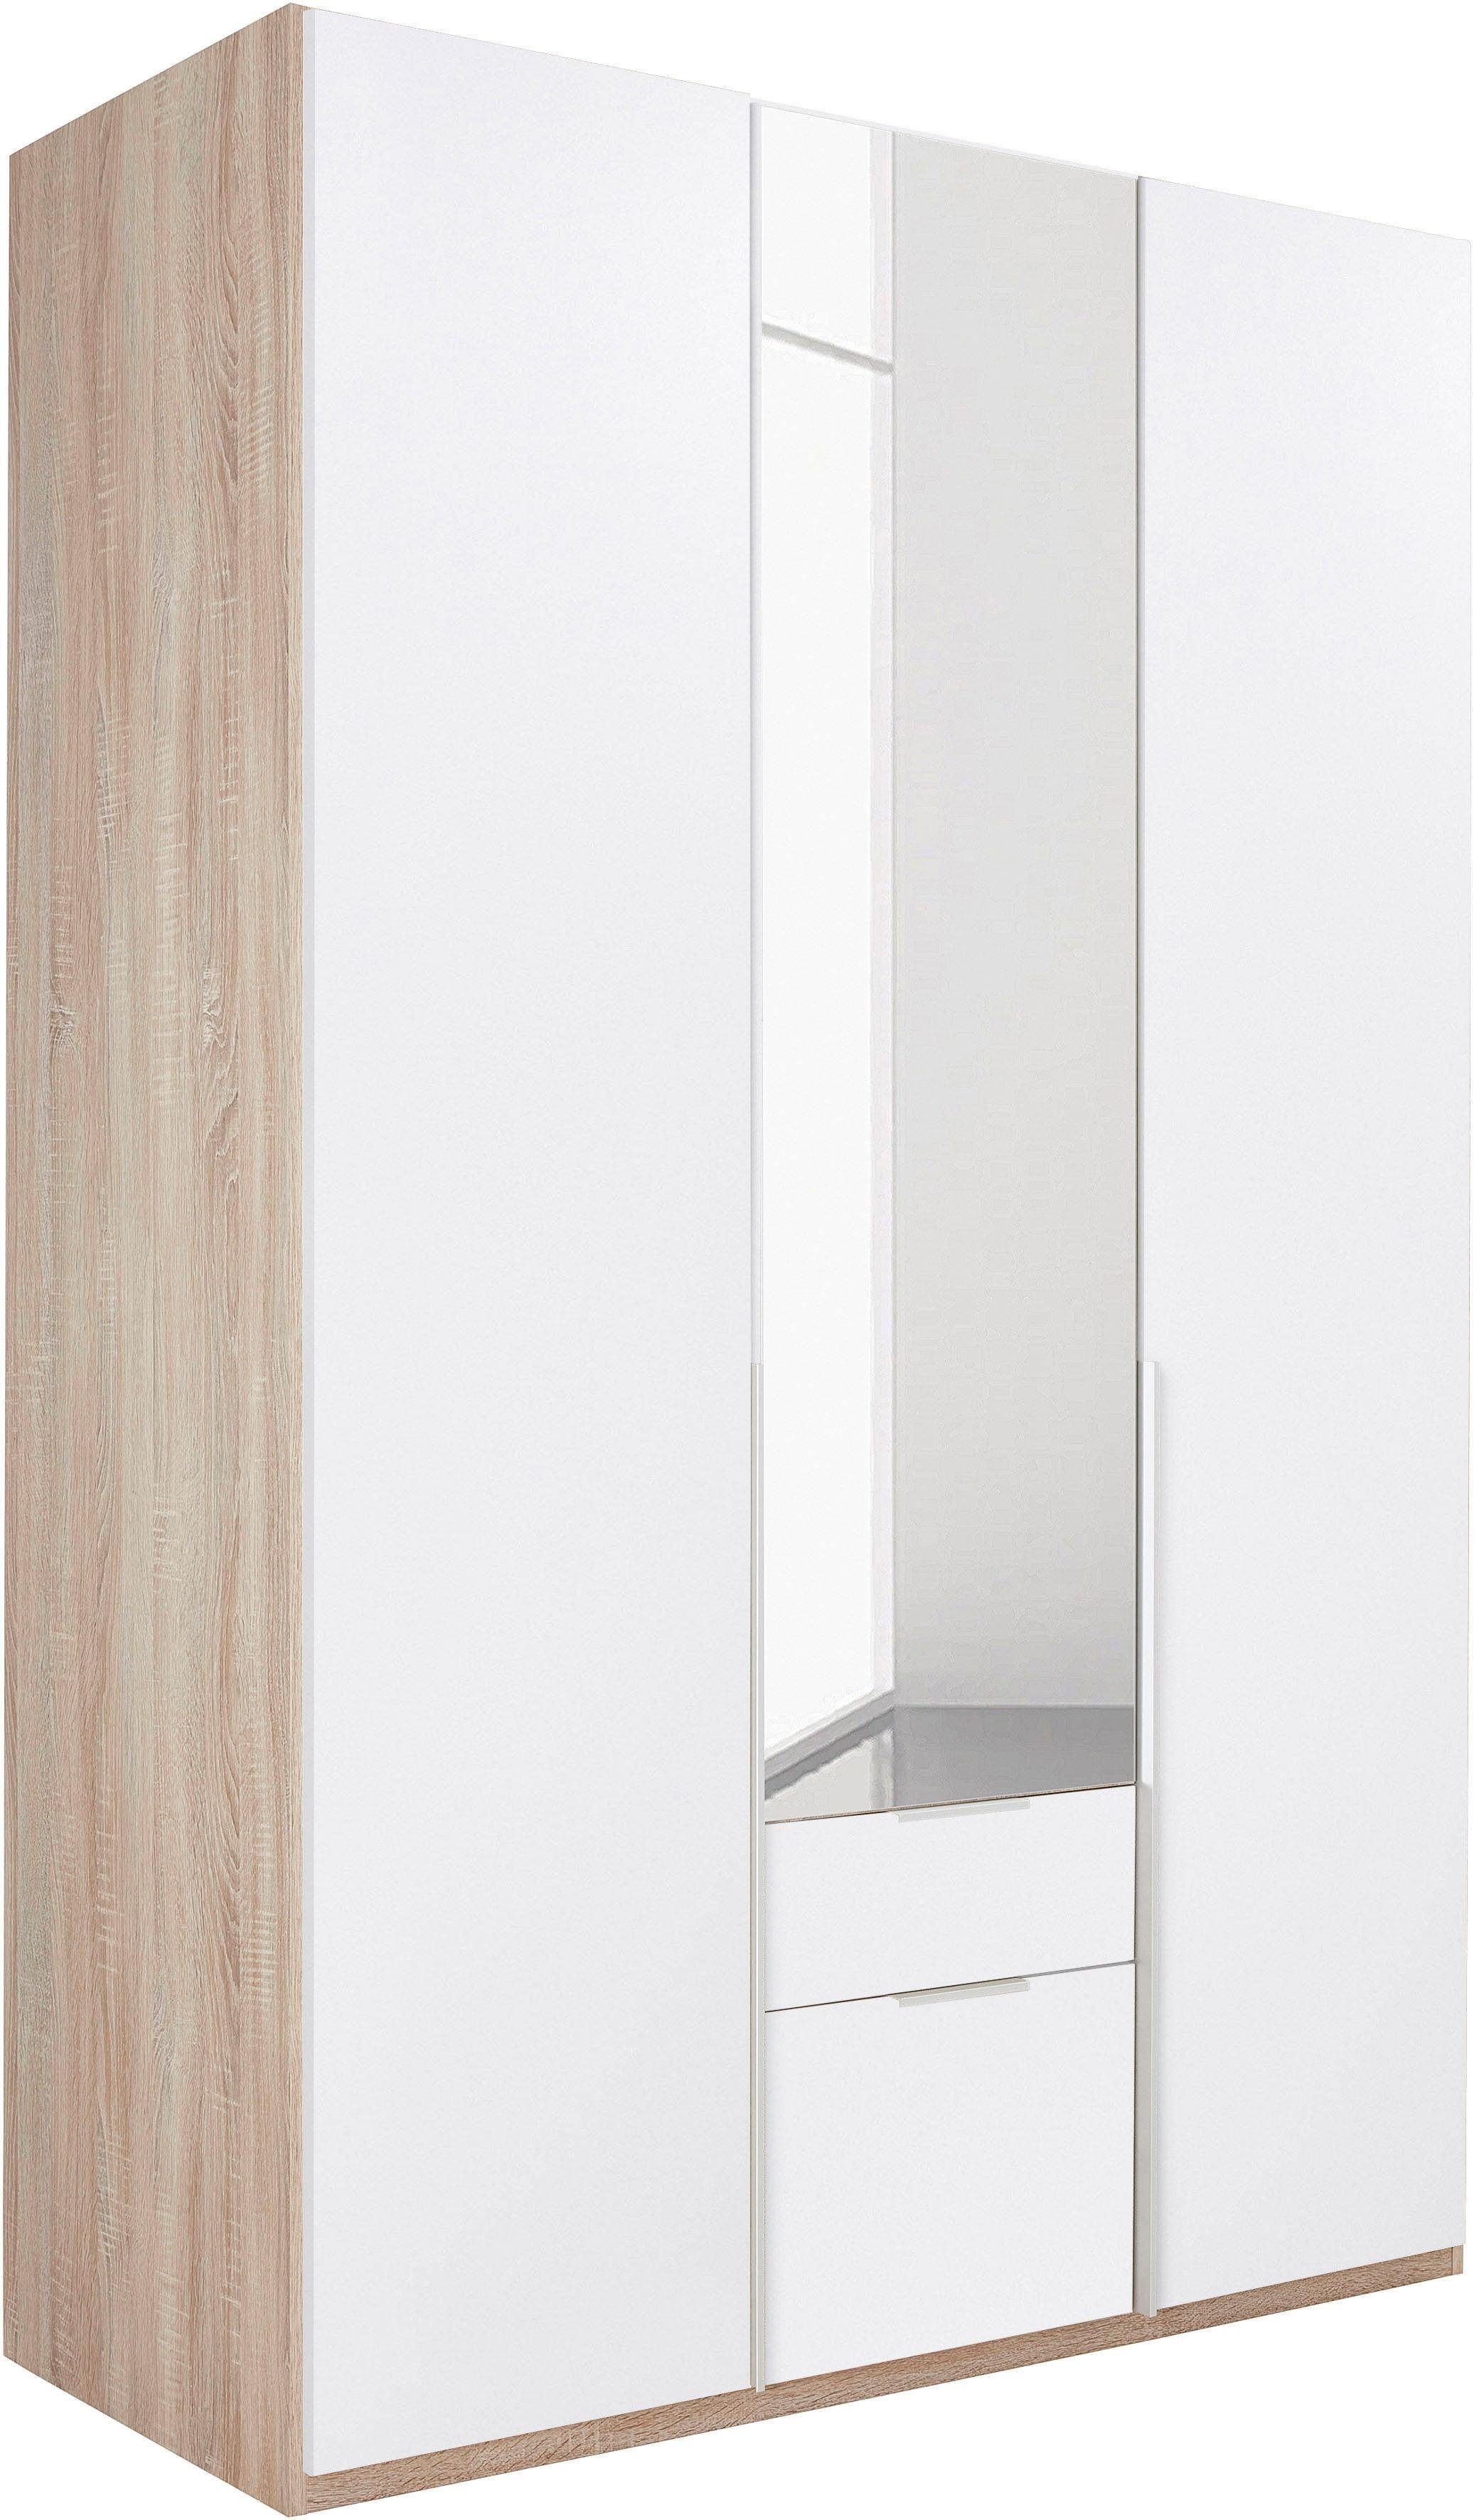 Wimex Kleiderschrank Spiegeltür mit New hell,weiß/Spiegel struktureichefarben York